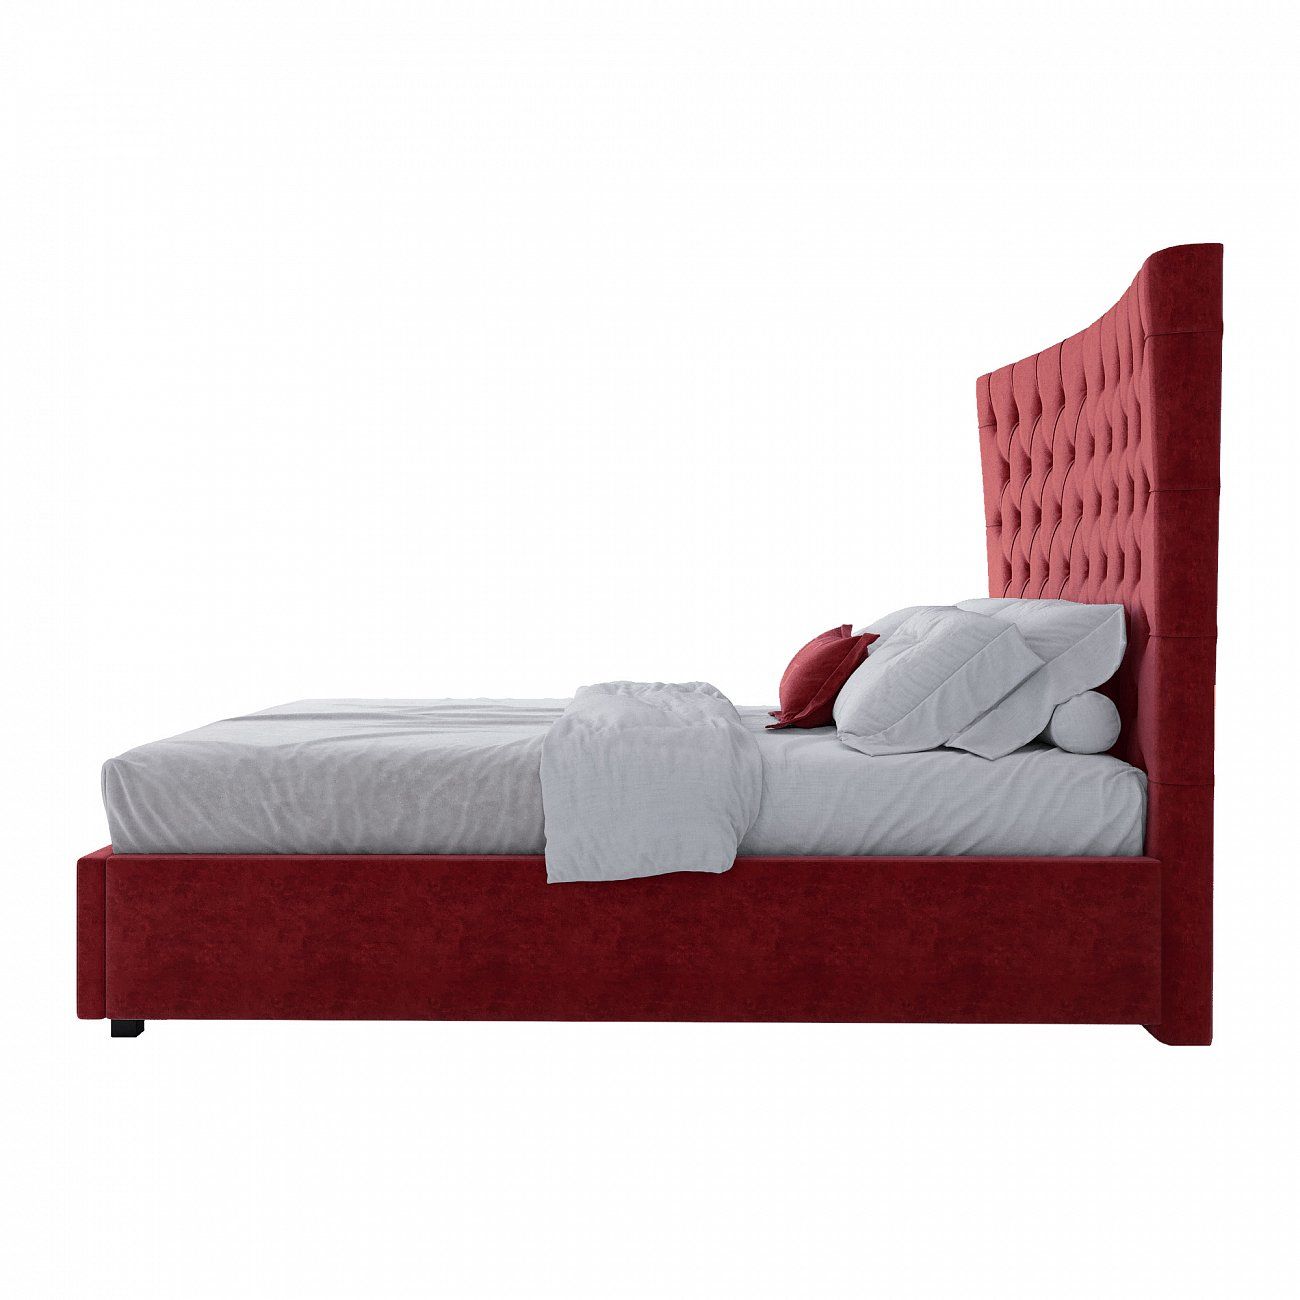 Кровать подростковая с каретной стяжкой 140х200 см красная QuickSand